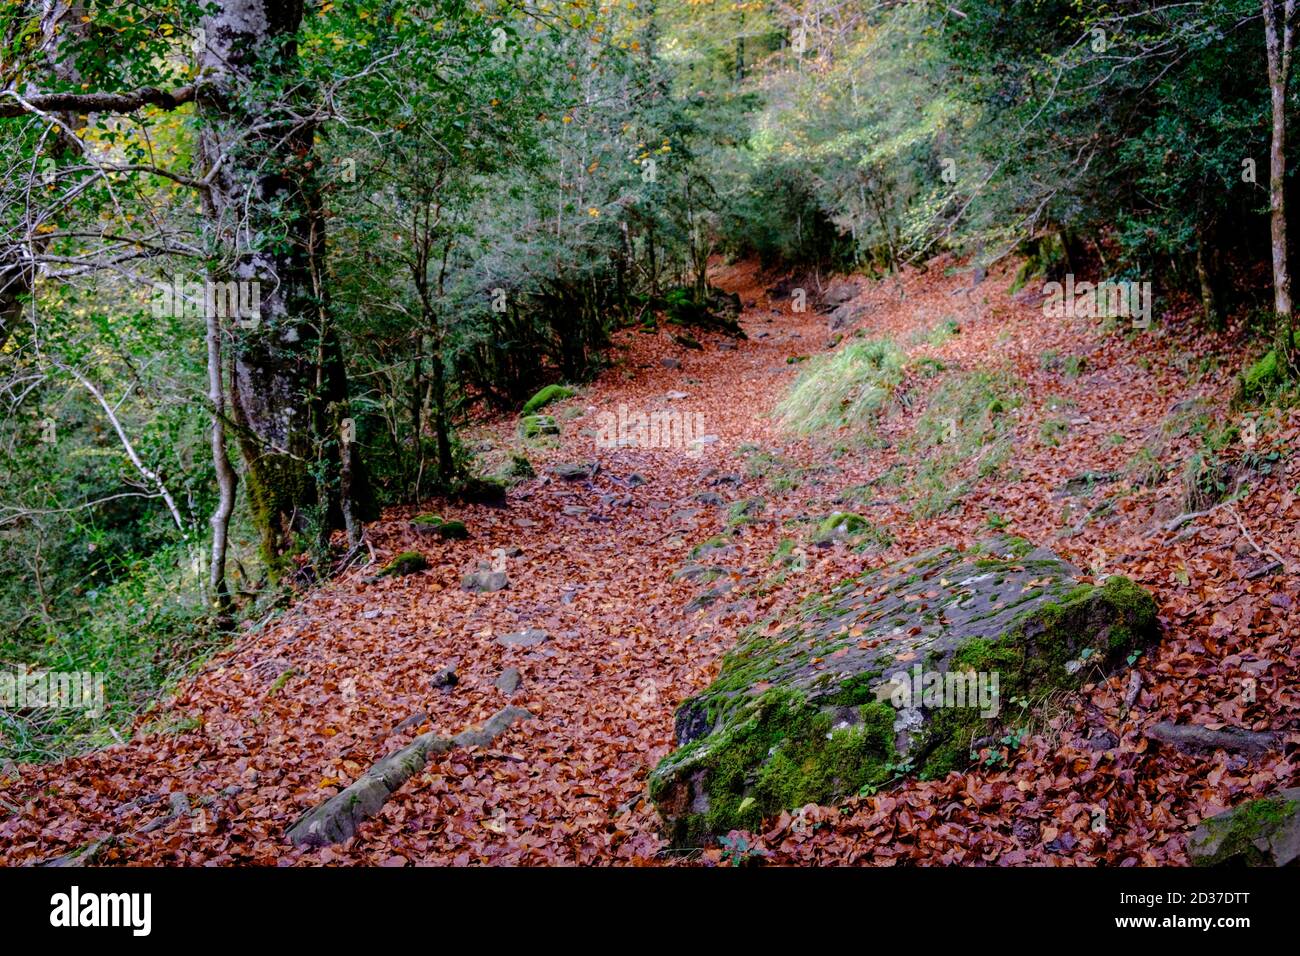 hojas de arboles caducifolios, sendero de Zuriza, valle del rio Veral, Parque natural de los Valles Occidentales, Huesca, cordillera de los pirineos, Stock Photo